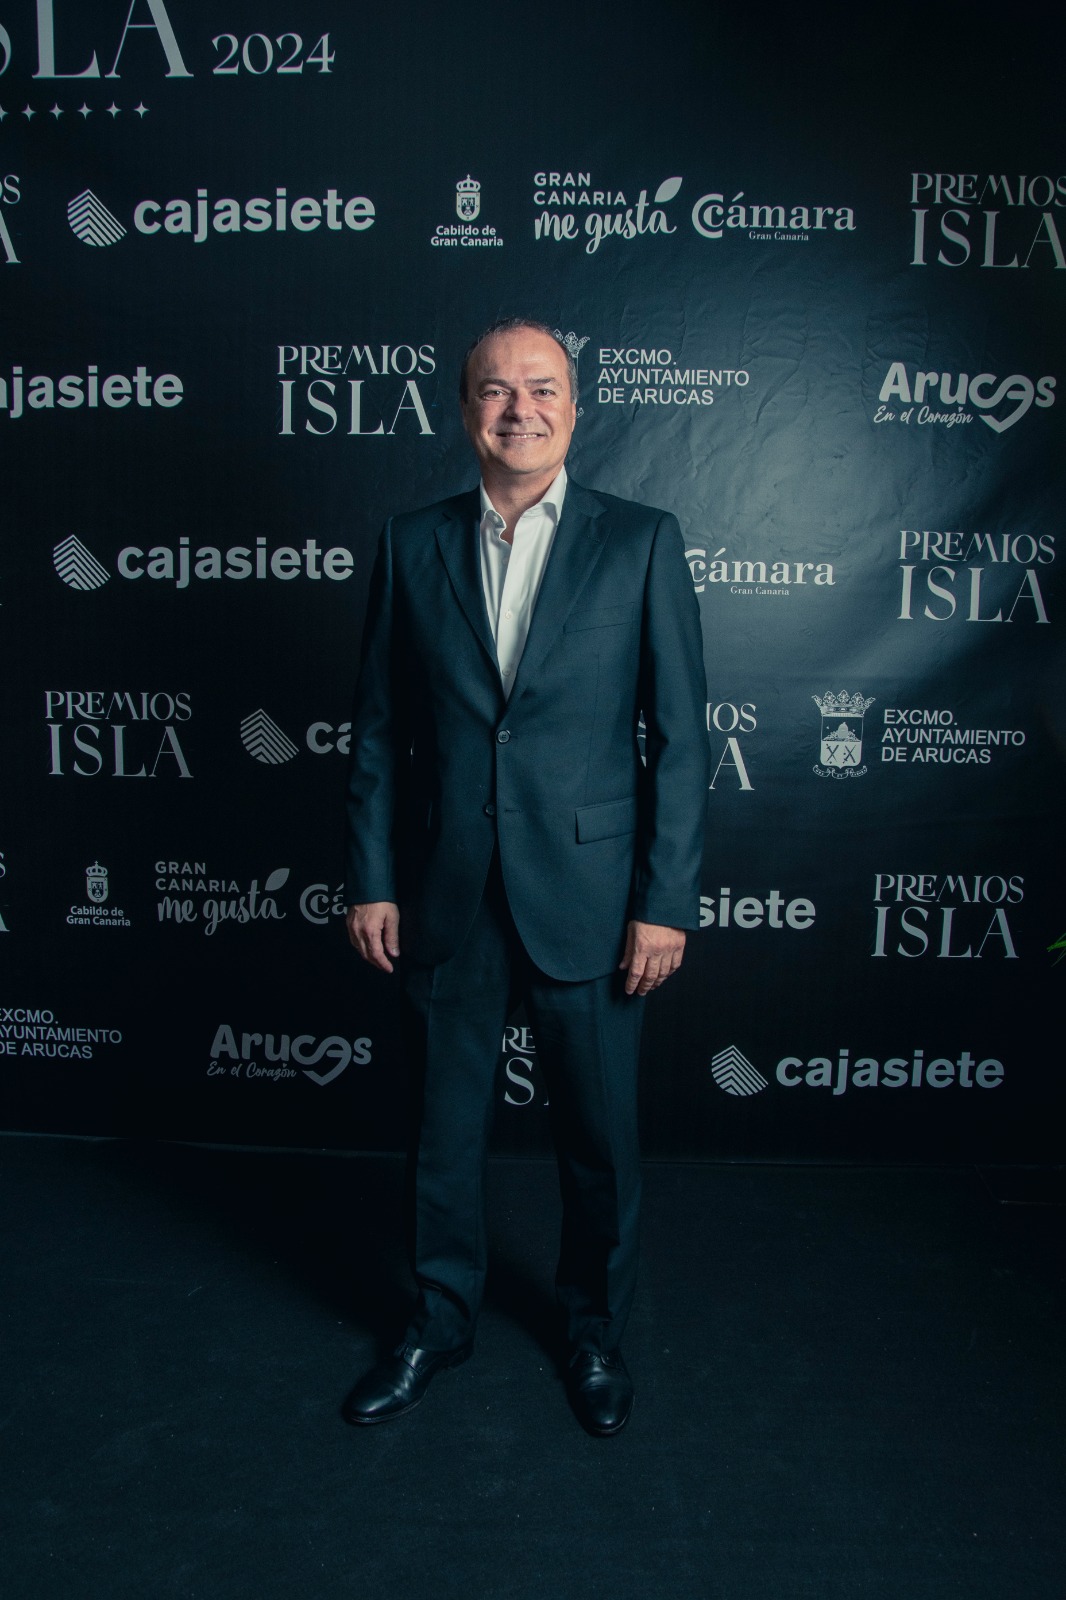 Cabildo de Gran Canaria apoya los Premios Isla 2024